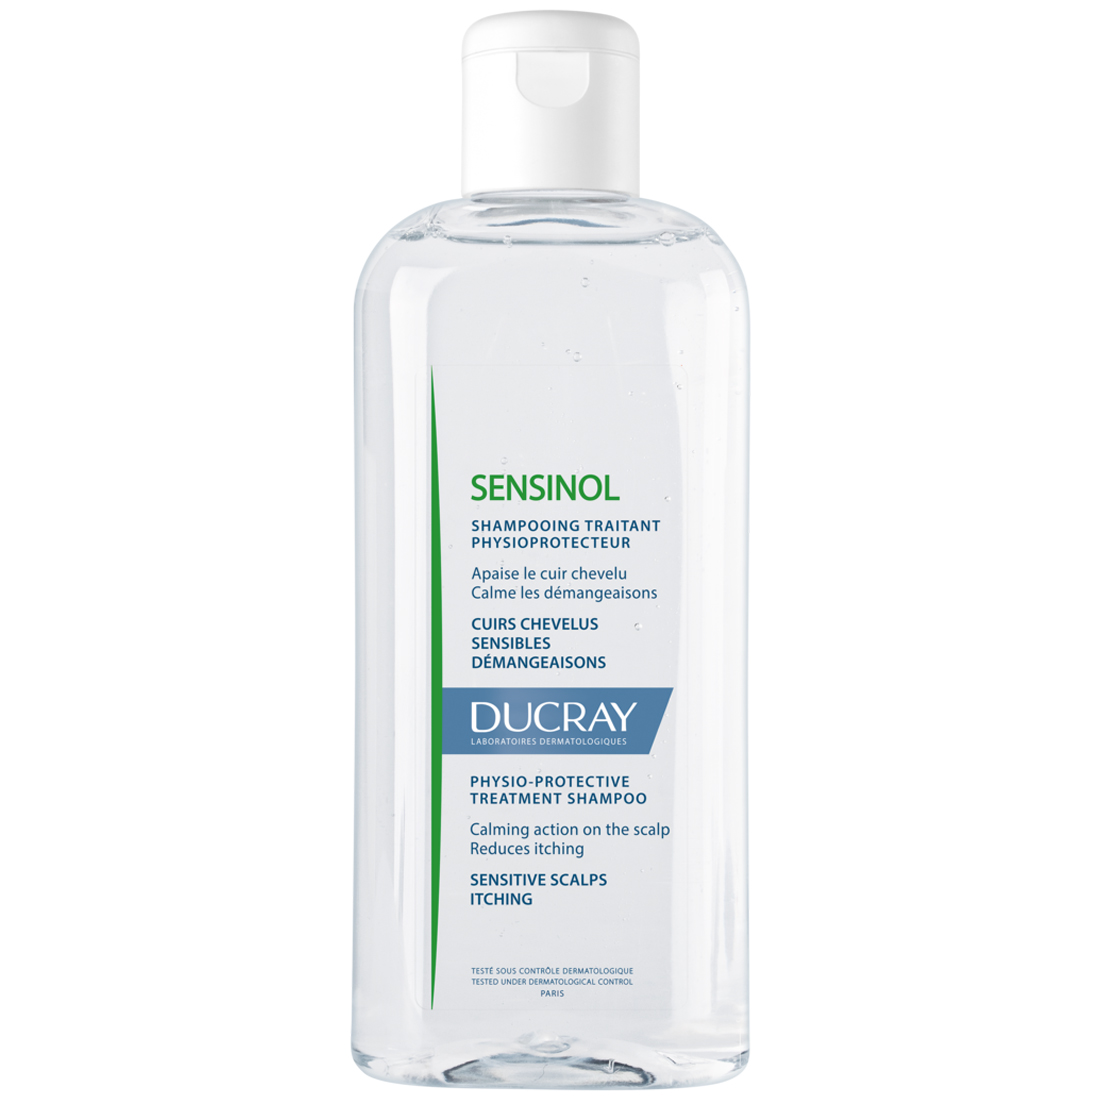 Ducray Физиологический защитный шампунь для чувствительной кожи, 200 мл (Ducray, Sensinol) ducray sensinol шампунь 200 ml